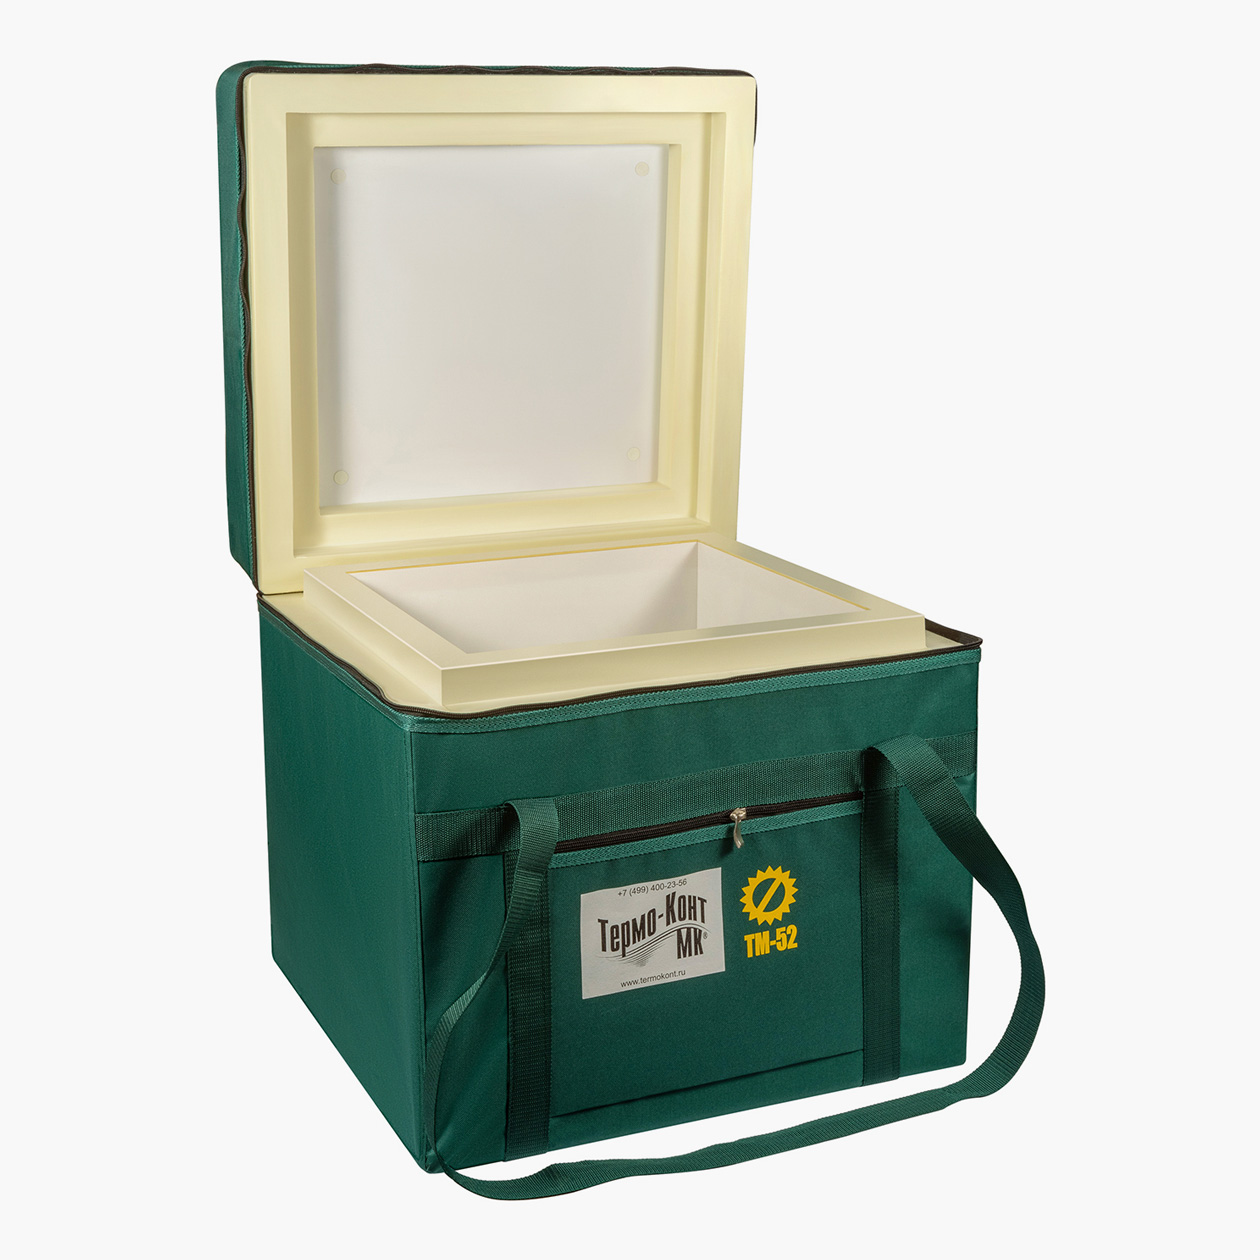 Термоконтейнер выглядит как коробка с плотными стенками. Зачастую он помещен в чехол из ткани, чтобы было удобнее переносить. Источник: medtechmarket.ru